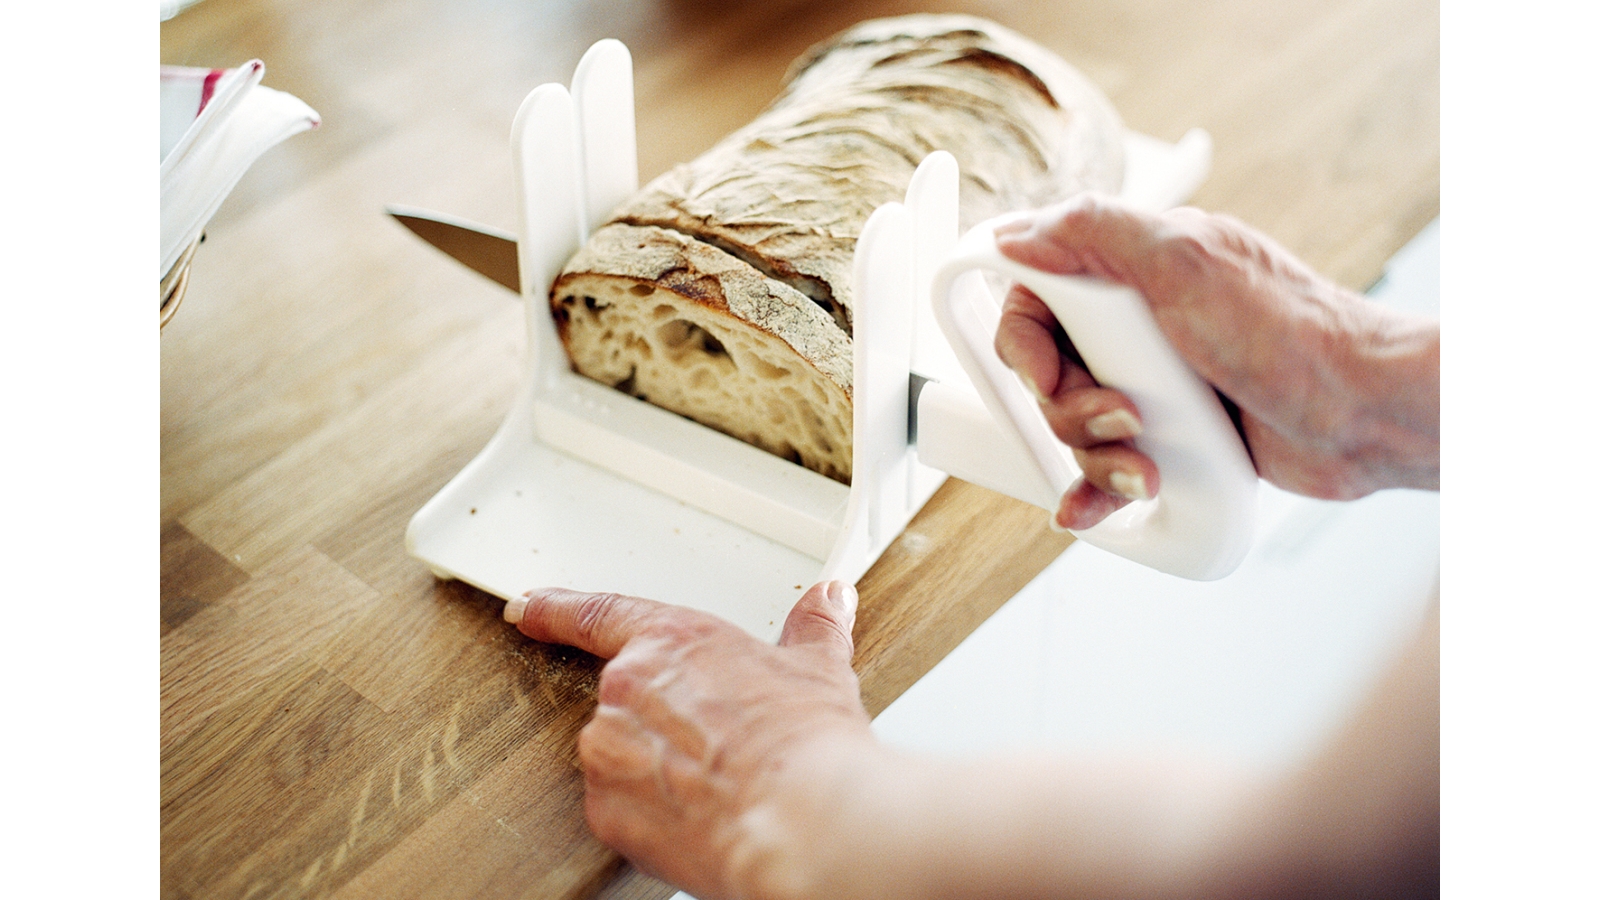 Schneidehilfe für Brot oder Kuchen für eine Hand